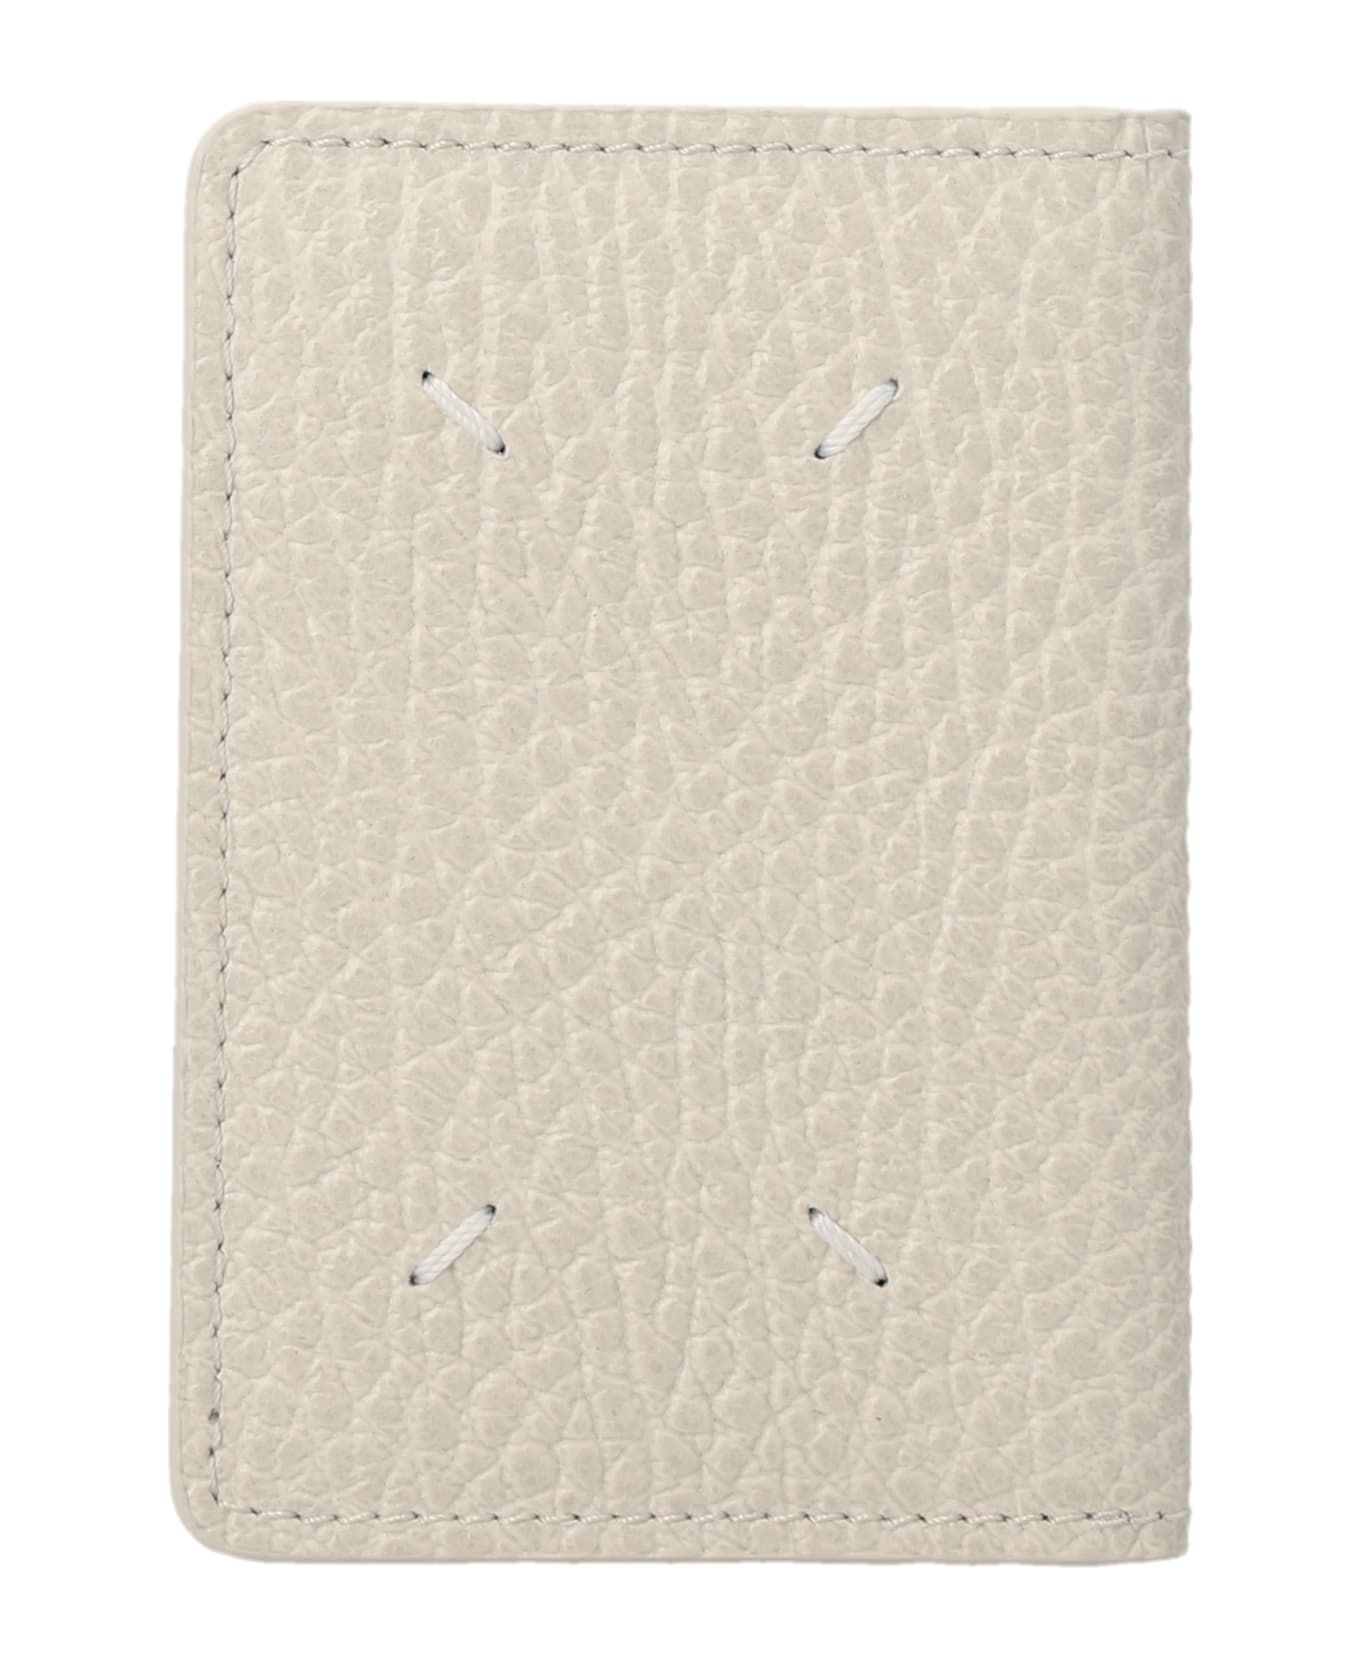 Maison Margiela Stitching  Card Holder - White